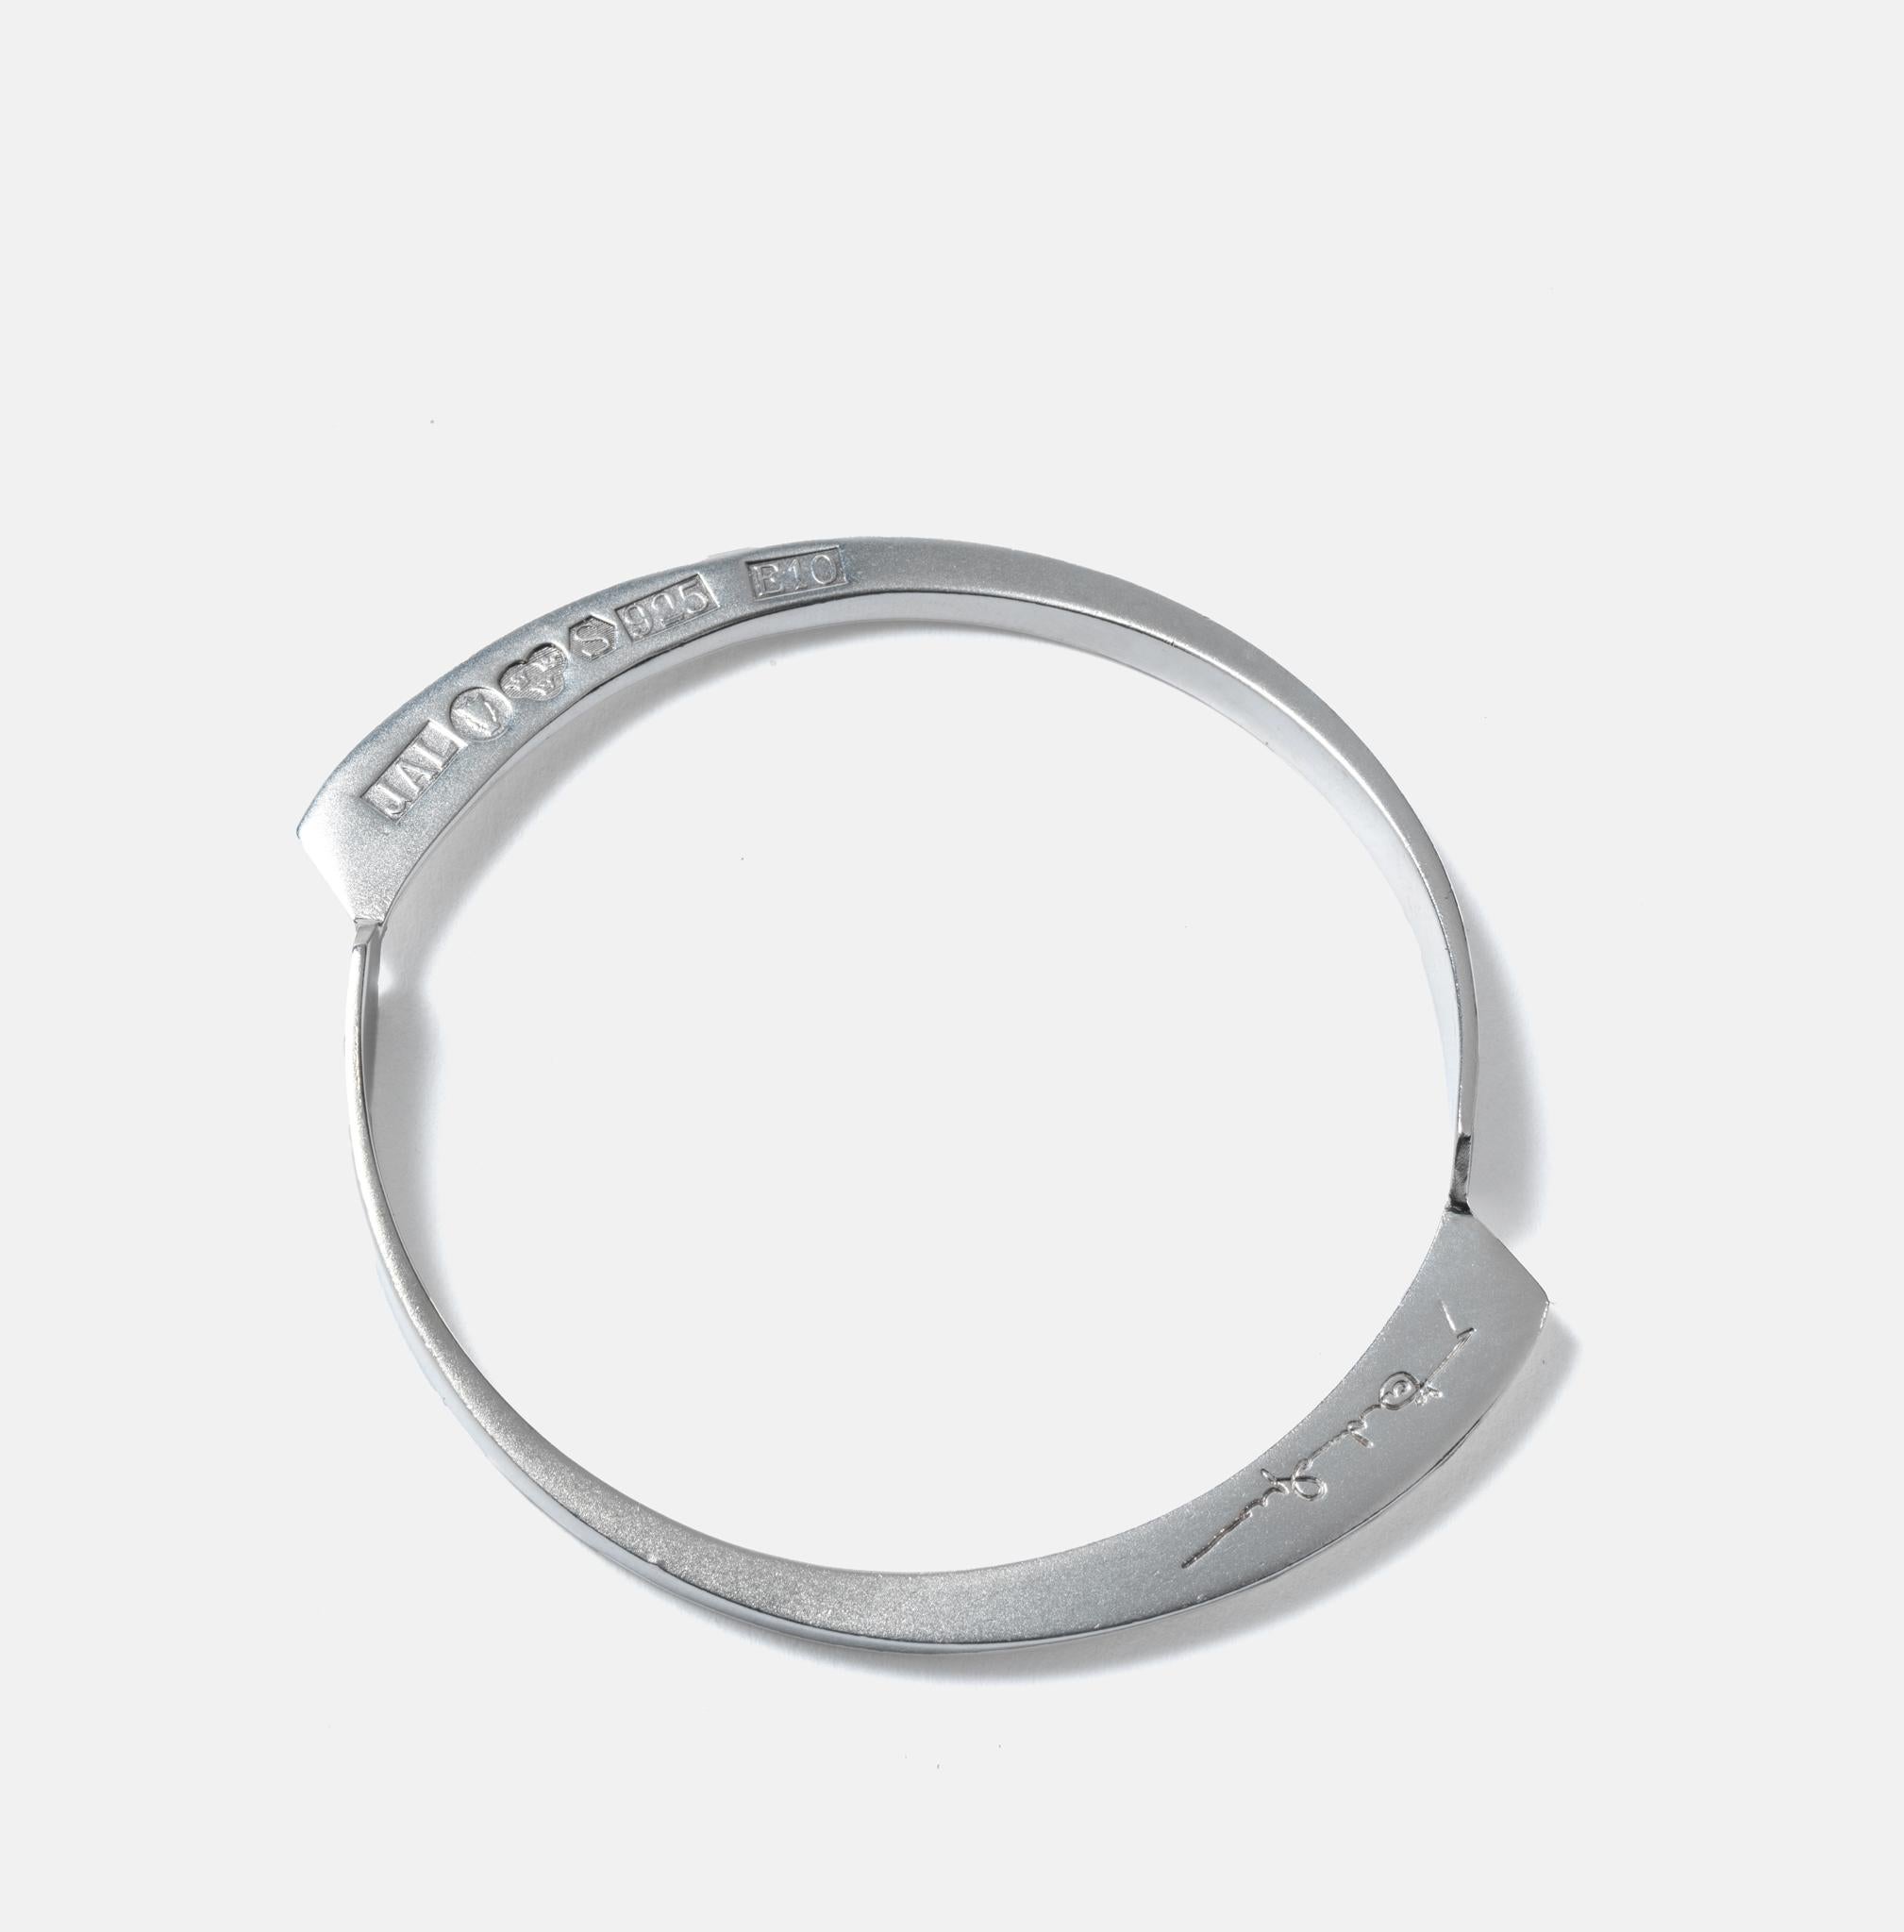 Women's or Men's Vintage silver bracelet made 1979 in Sweden. For Sale